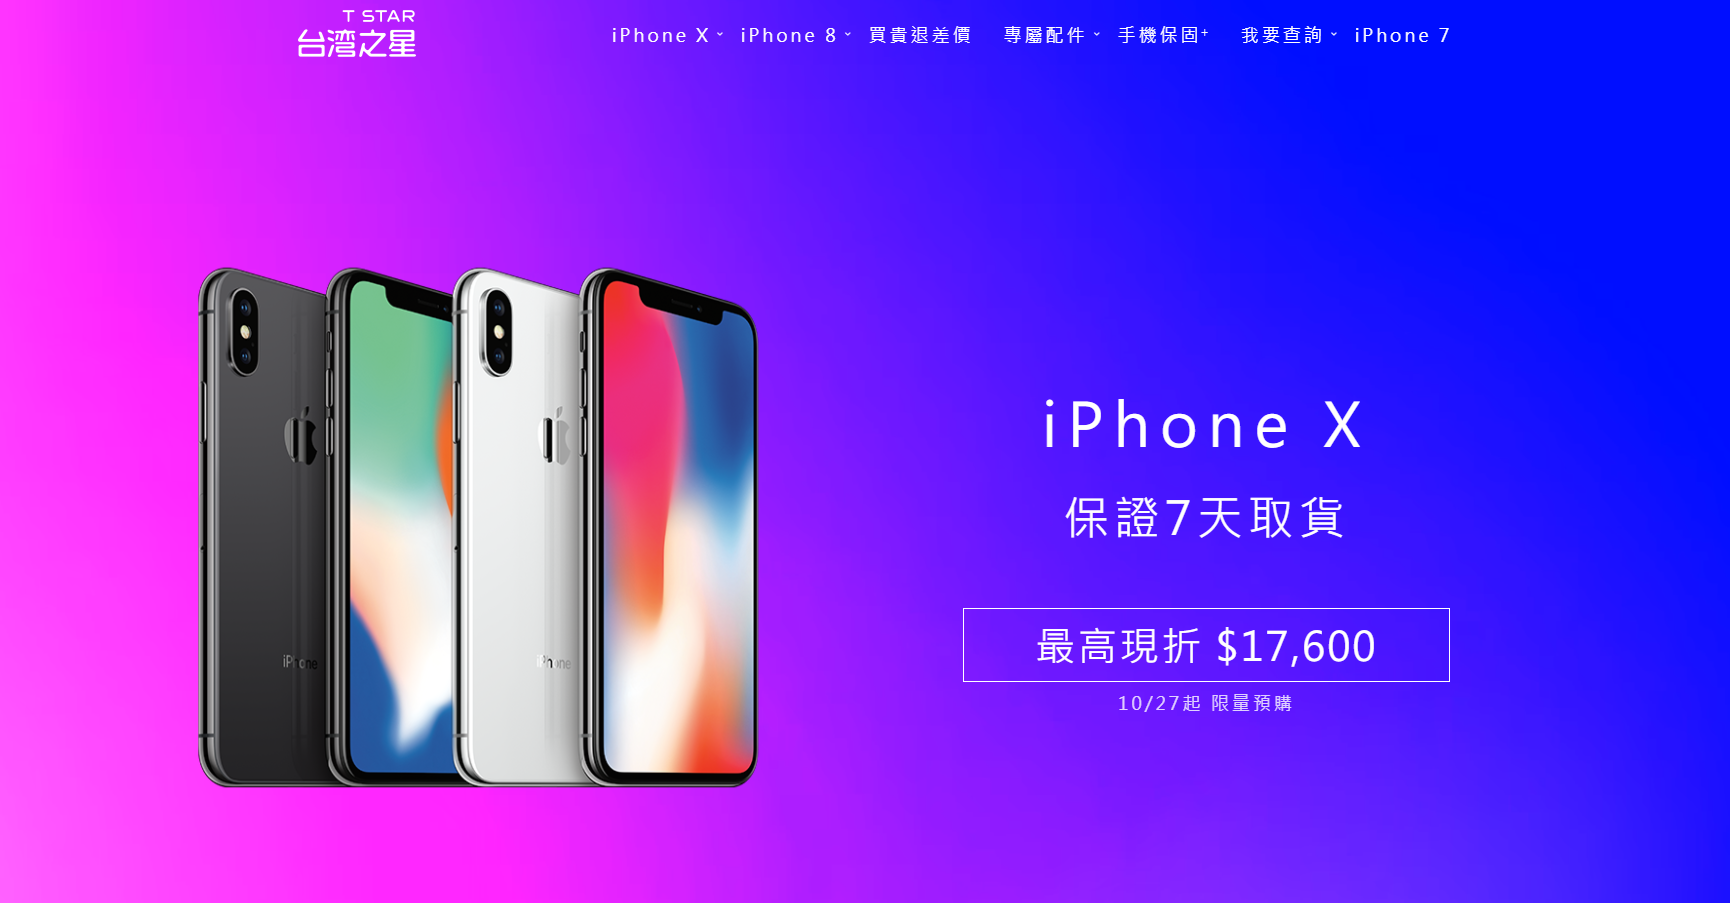 台灣之星iphone X 資費方案出爐 上網吃到飽999 元起 蘋果仁 Iphone Ios 好物推薦科技媒體